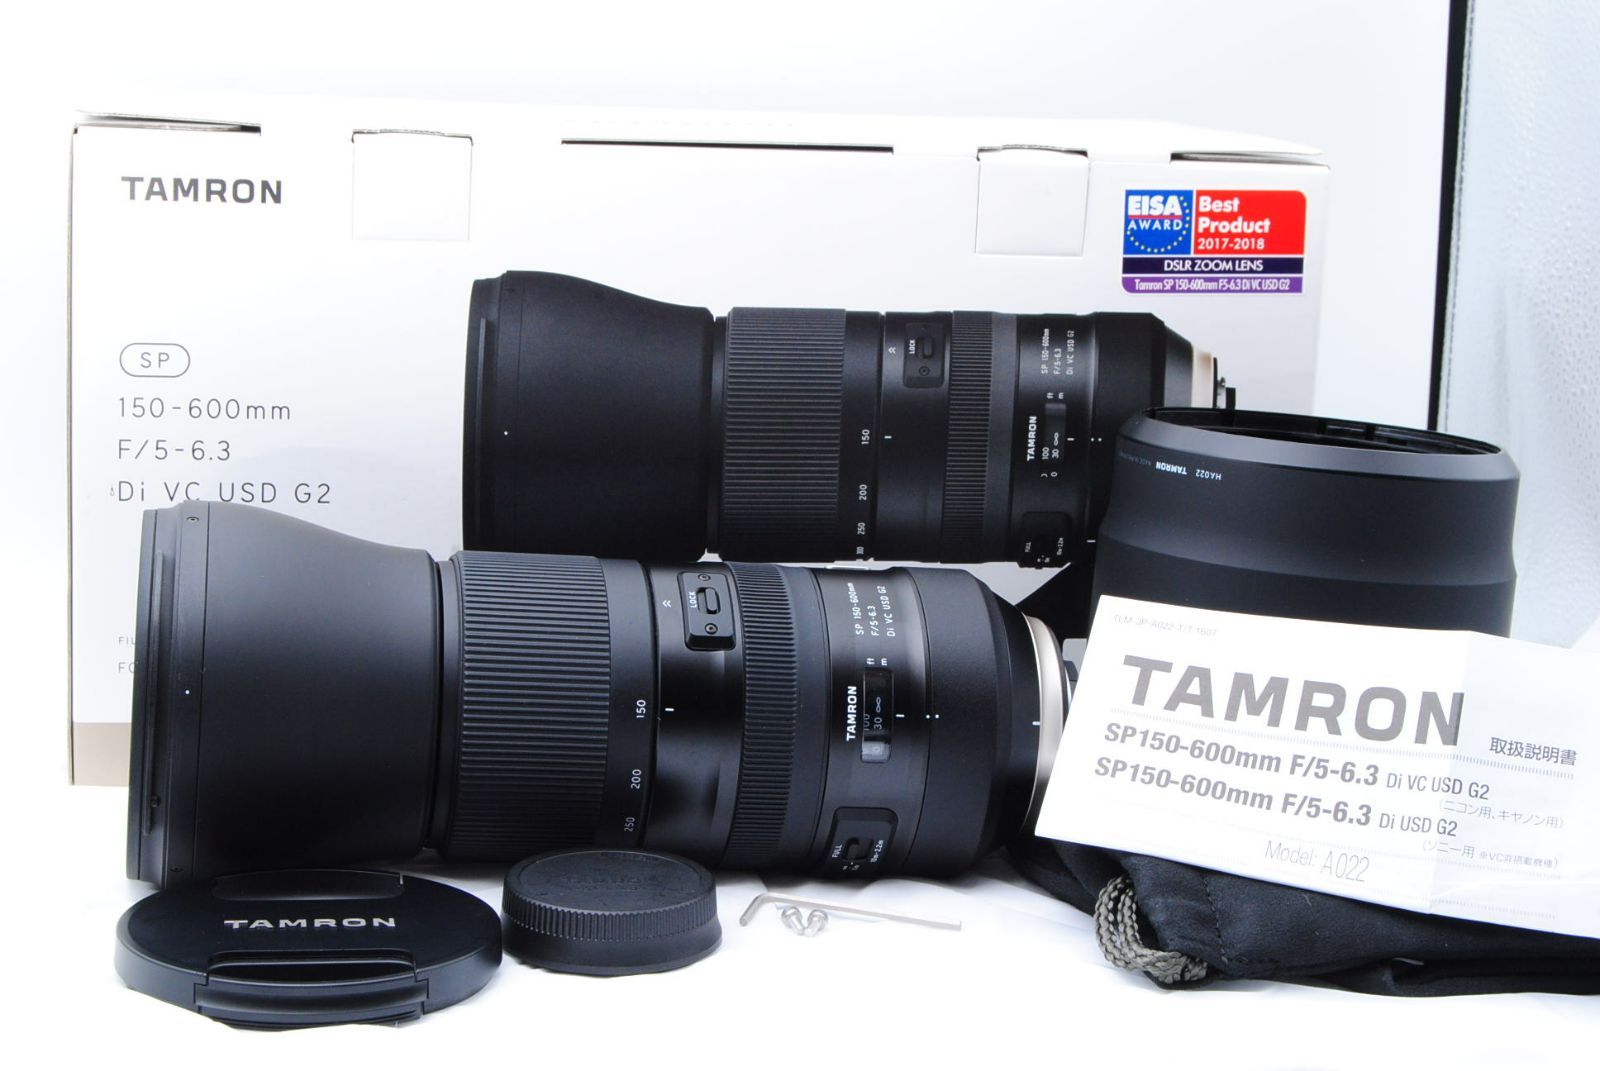 TAMRON SP 150-600mm F/5-6.3 DI VC USD G2